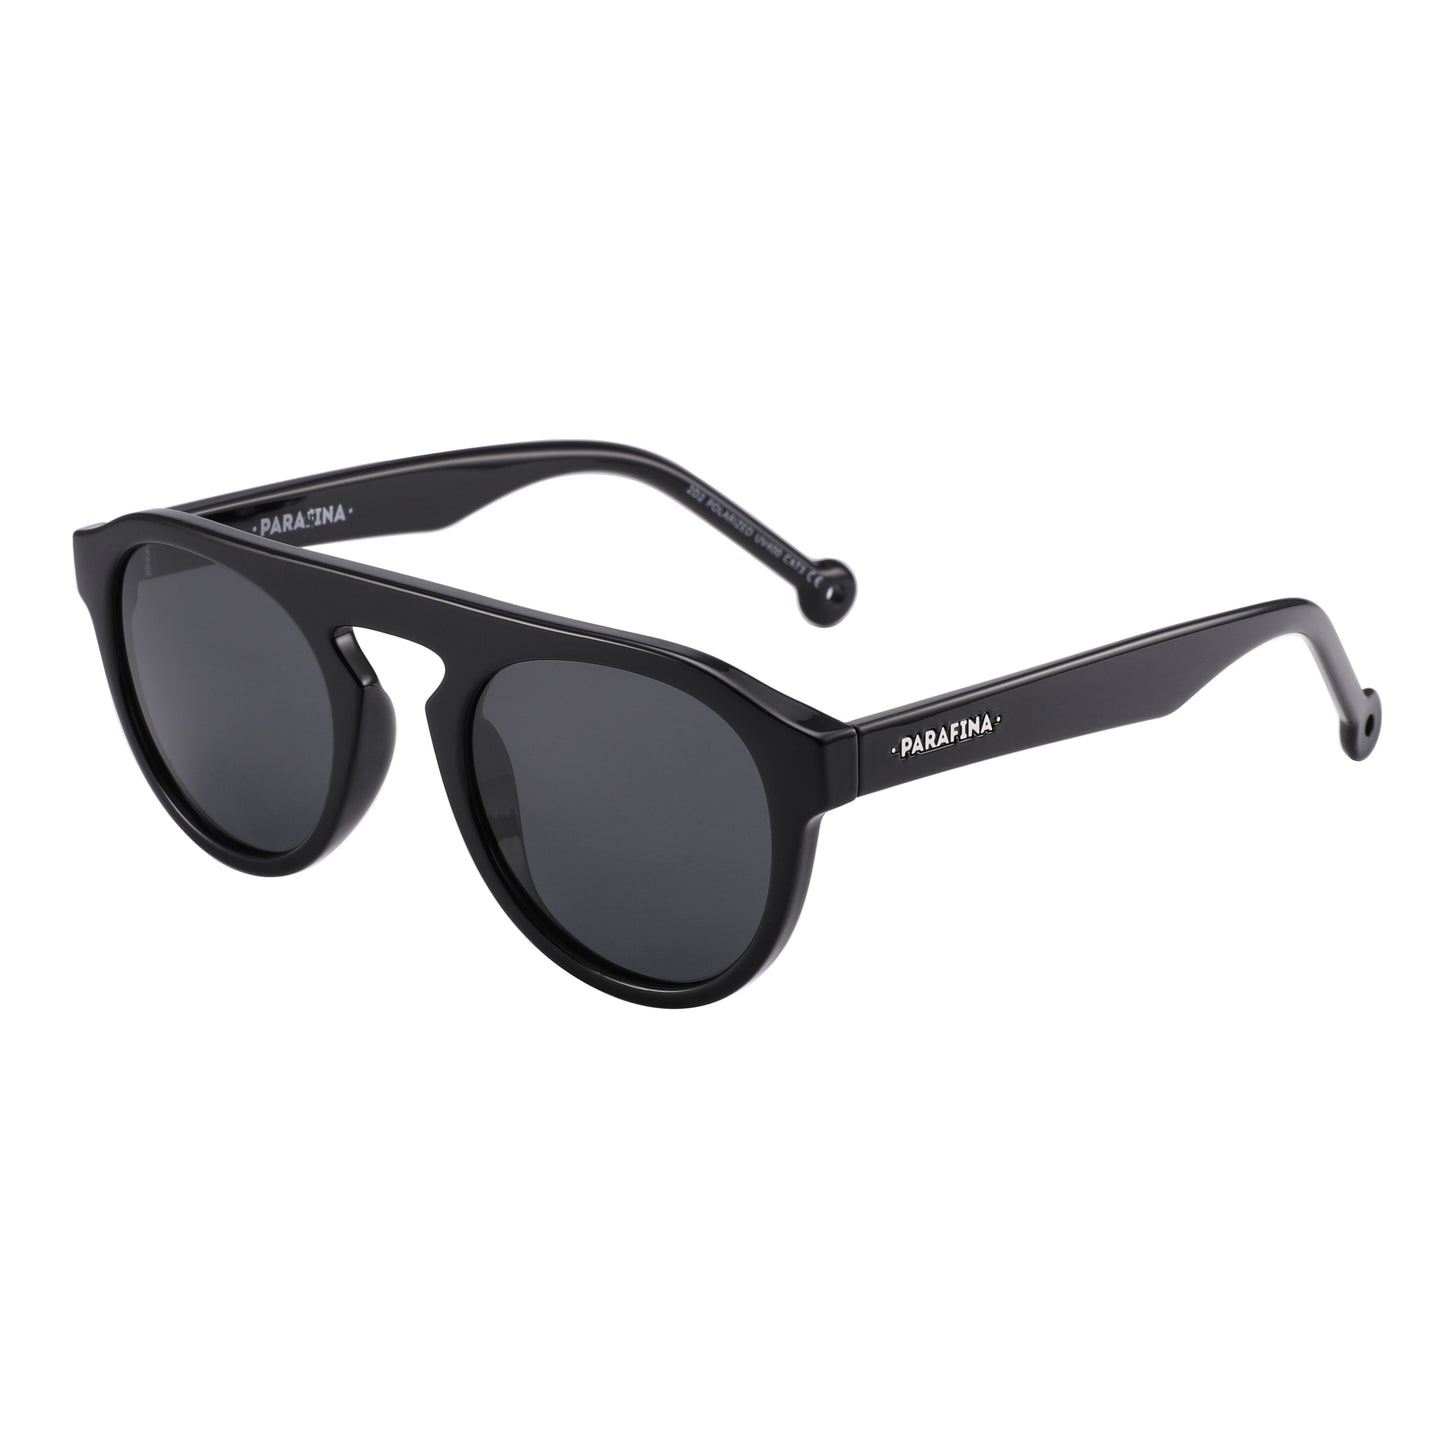 CORRIENTE Sunglasses - Black